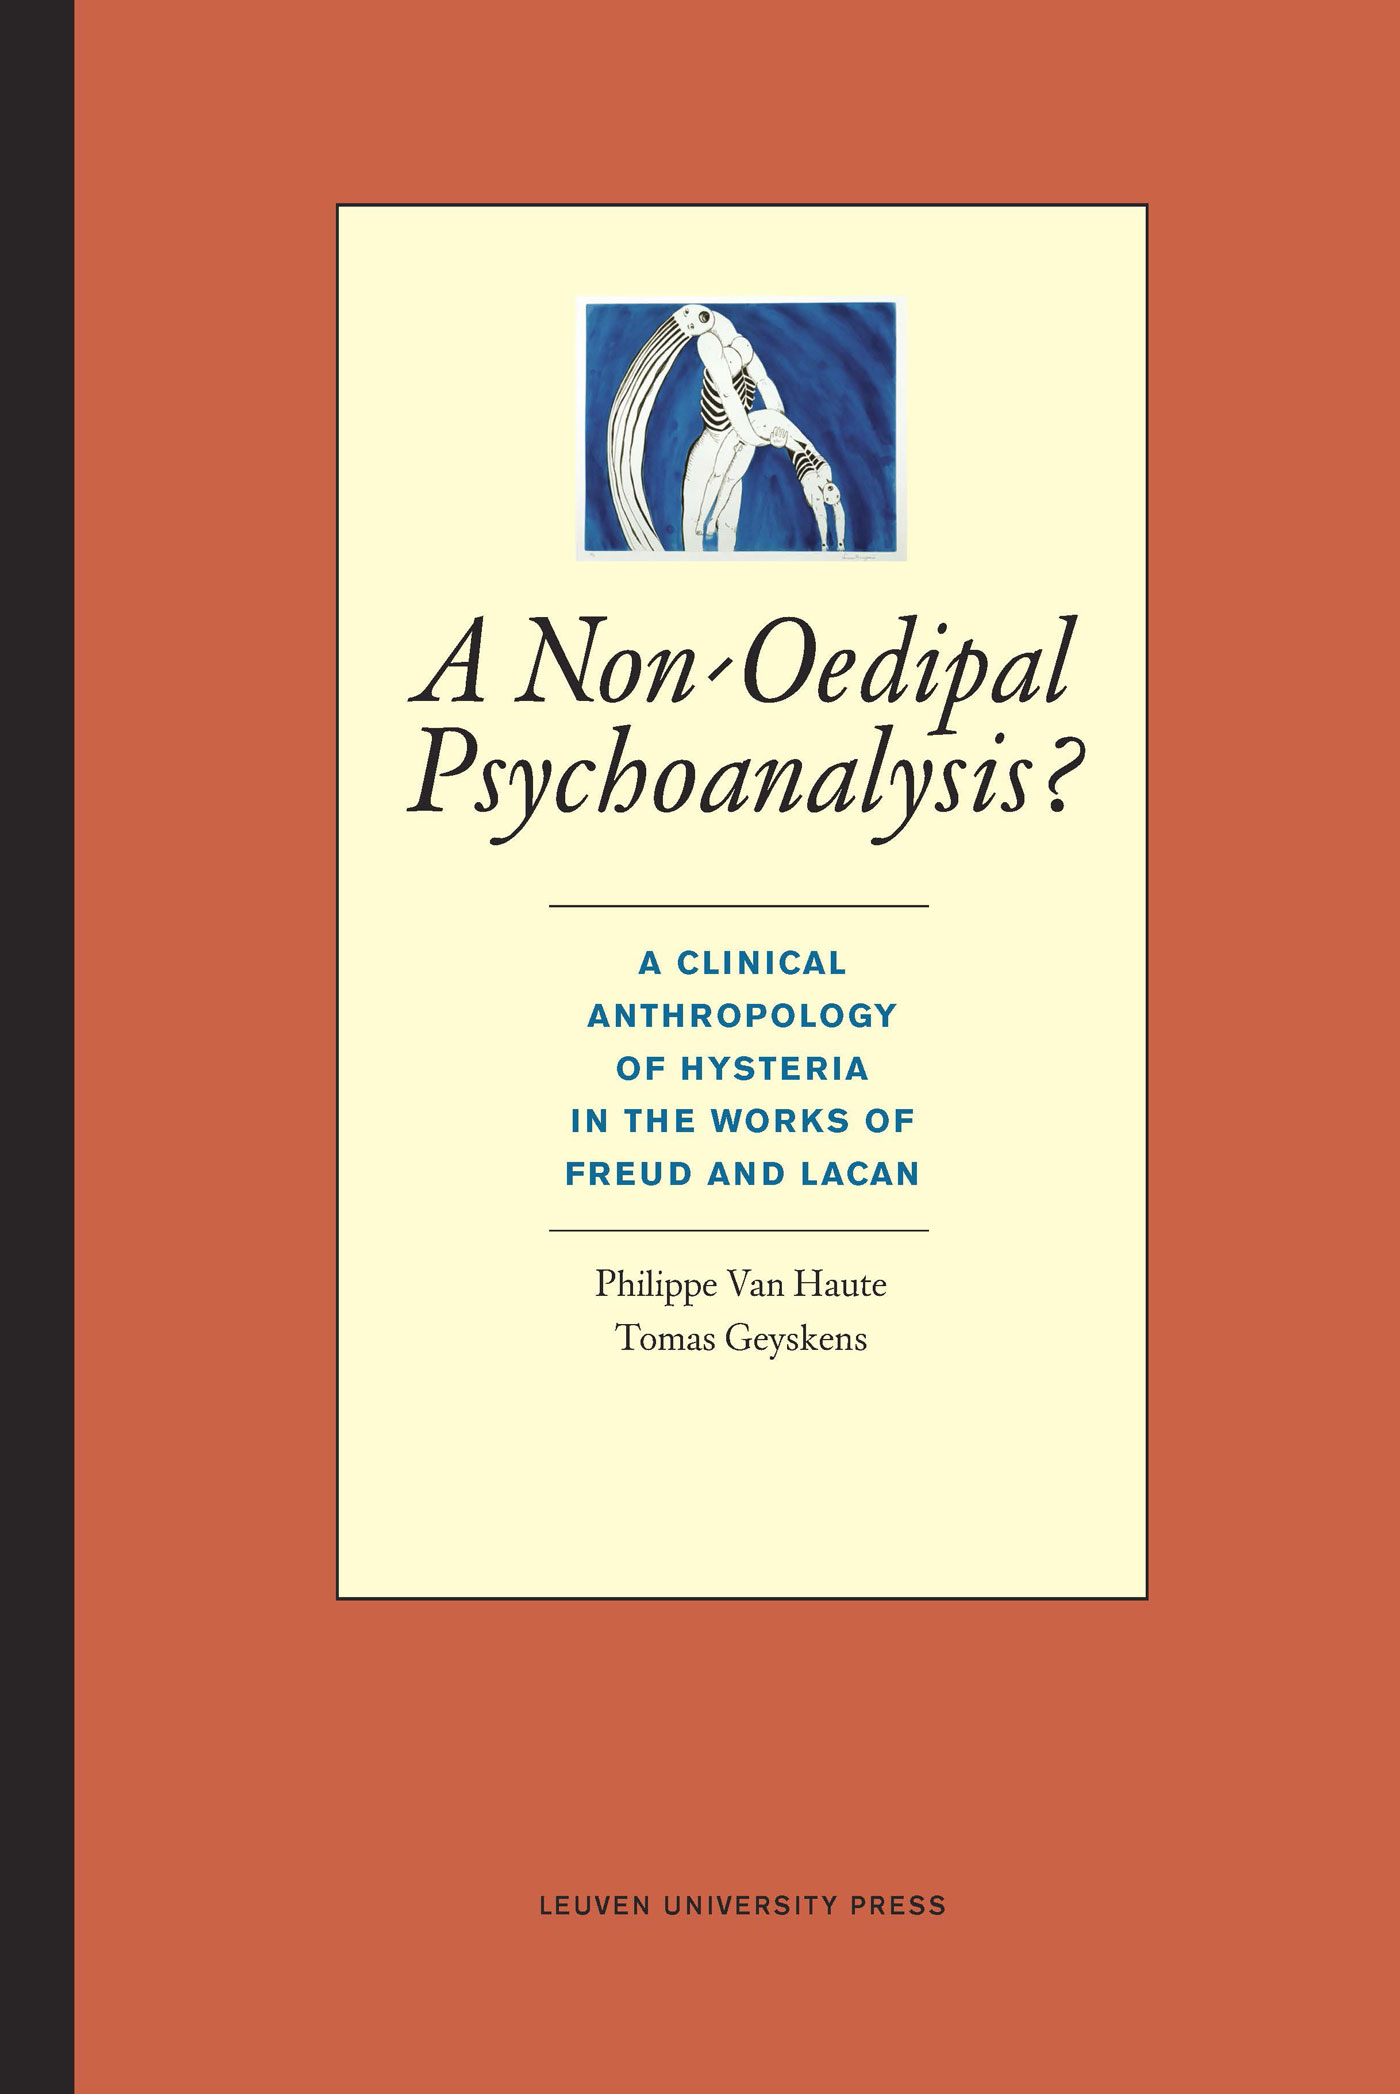 A non-oedipal psychoanalysis?